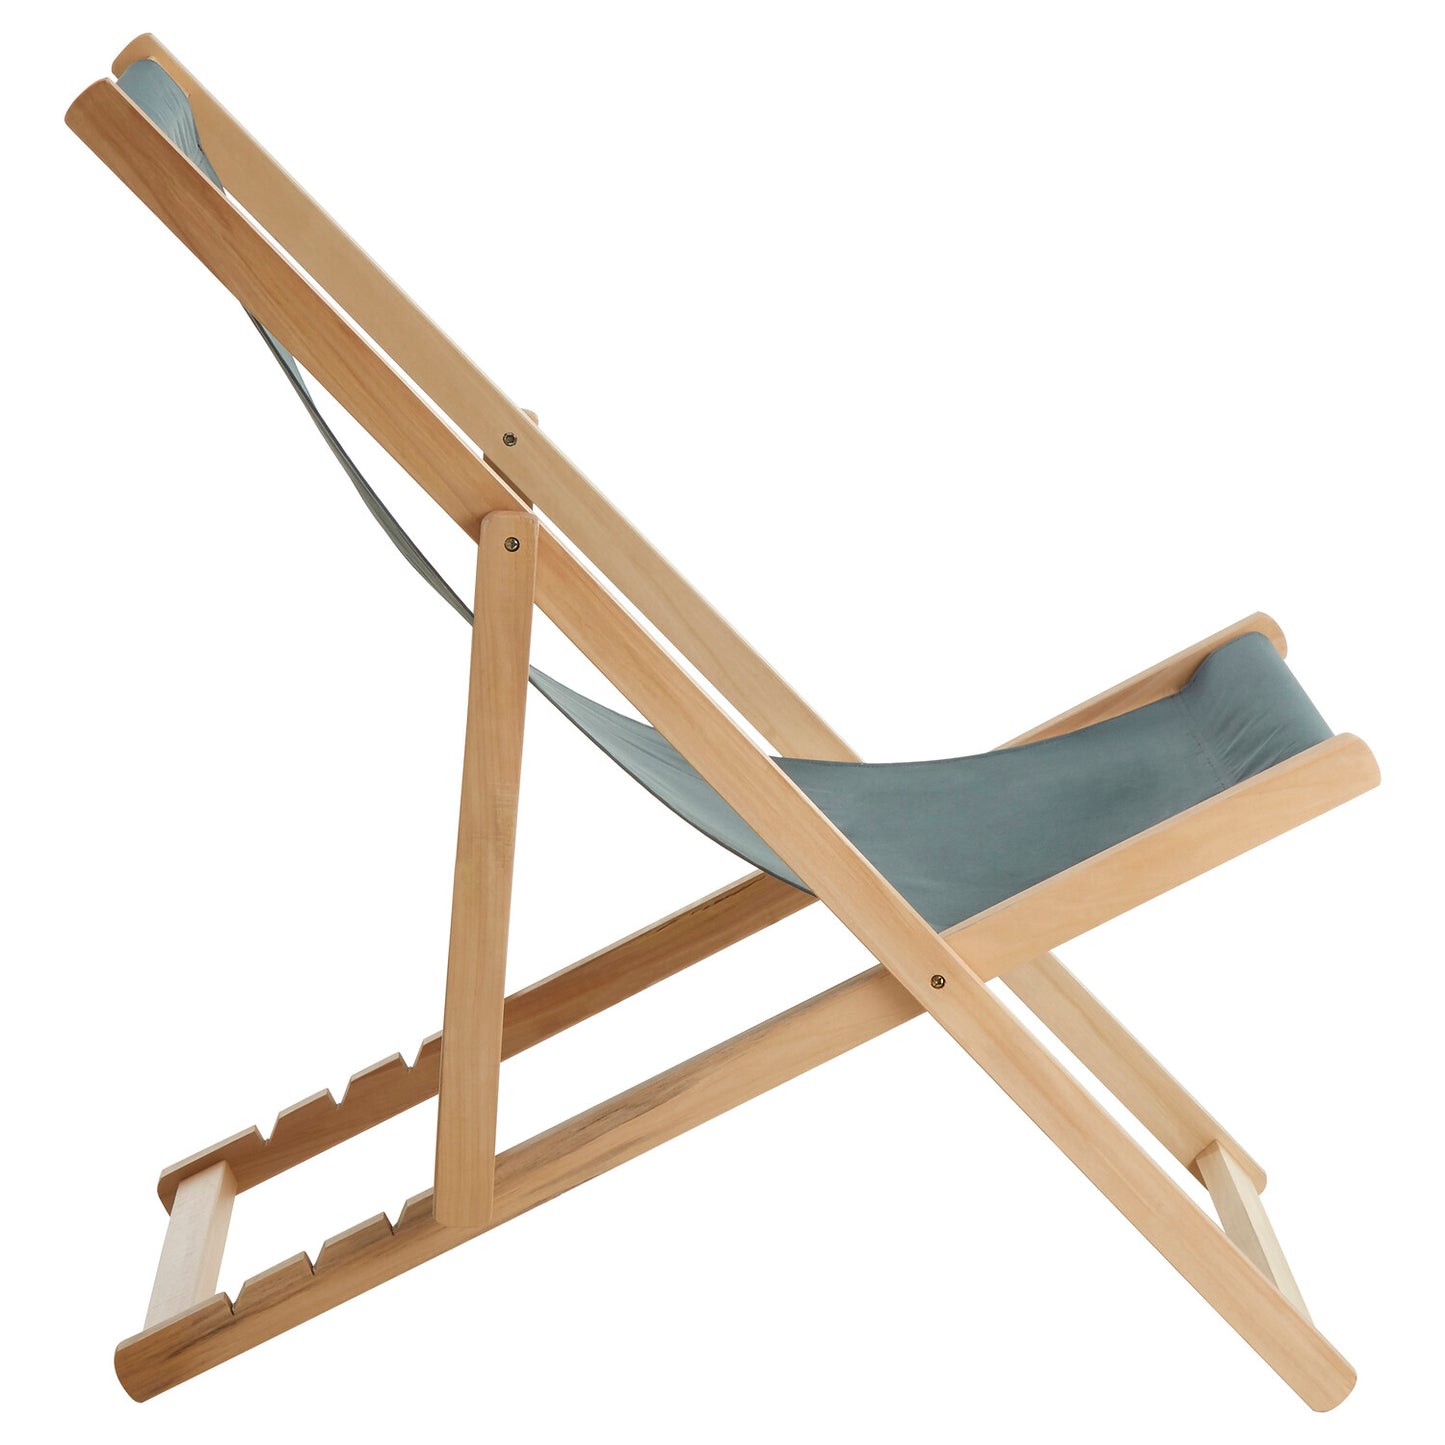 Beauport Khaki Deck Chair